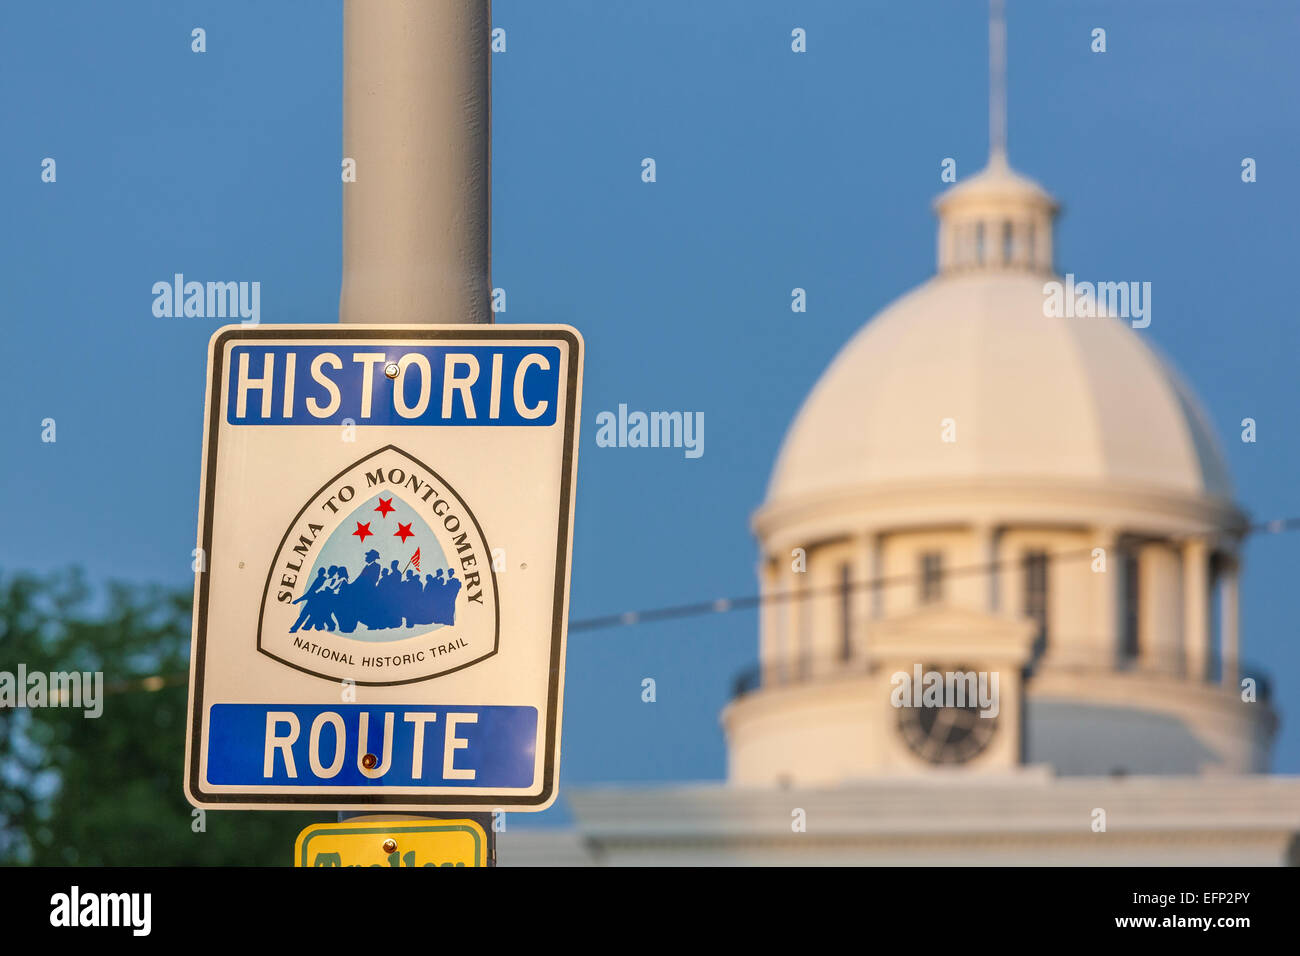 Firmar Selma a Montgomery la Histórica Ruta Nacional delante de Montgomery, Alabama State Capitol, el final de la famosa marcha de derechos civiles. Foto de stock